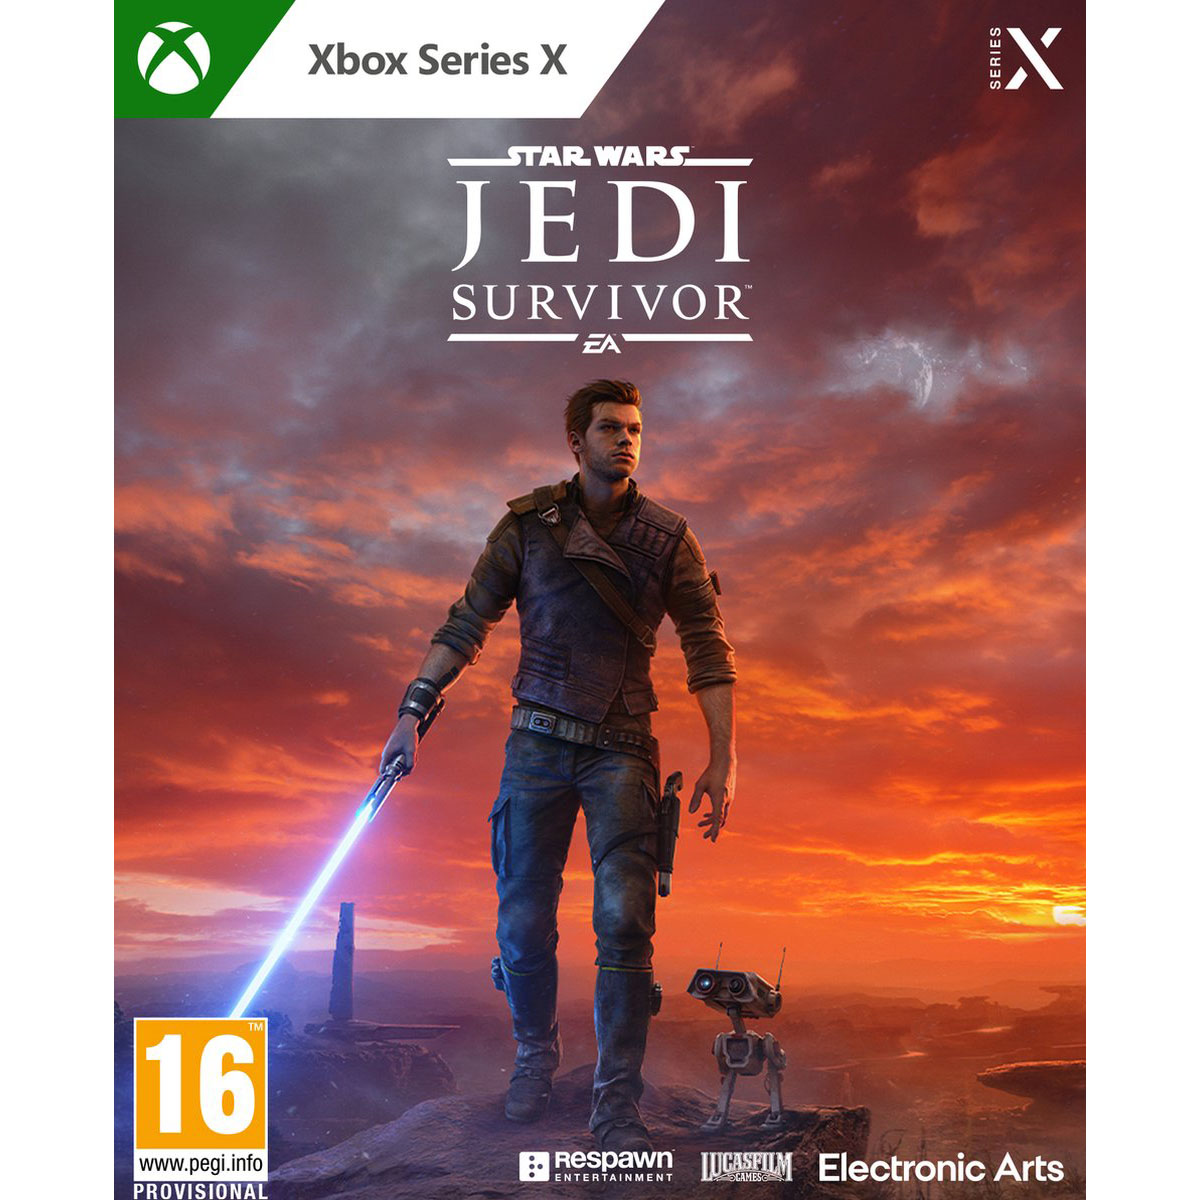 Star Wars Jedi Survivor preorder xbox